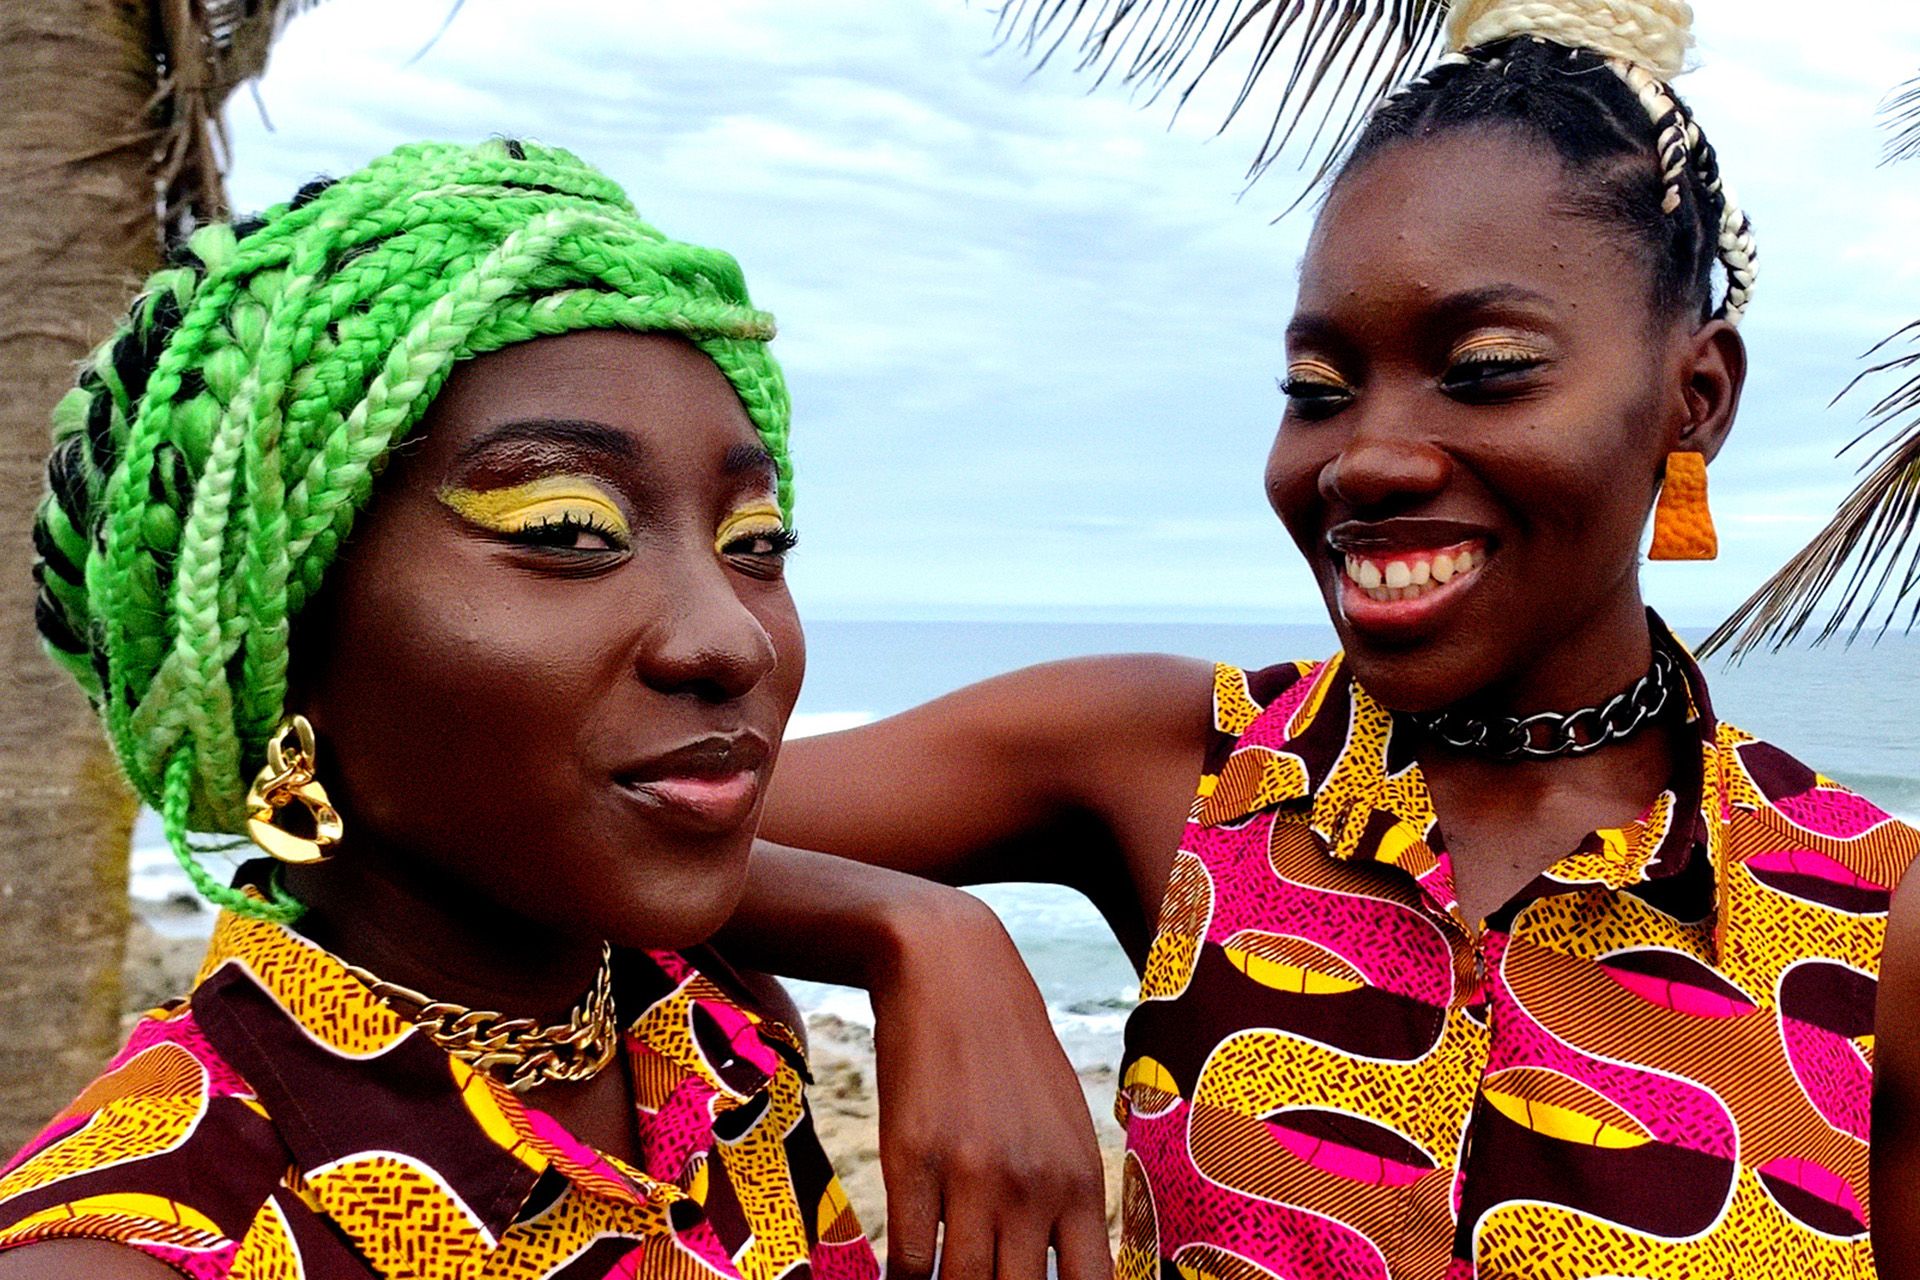 Dos mujeres en ropa de colores brillantes enfrente de una palmera